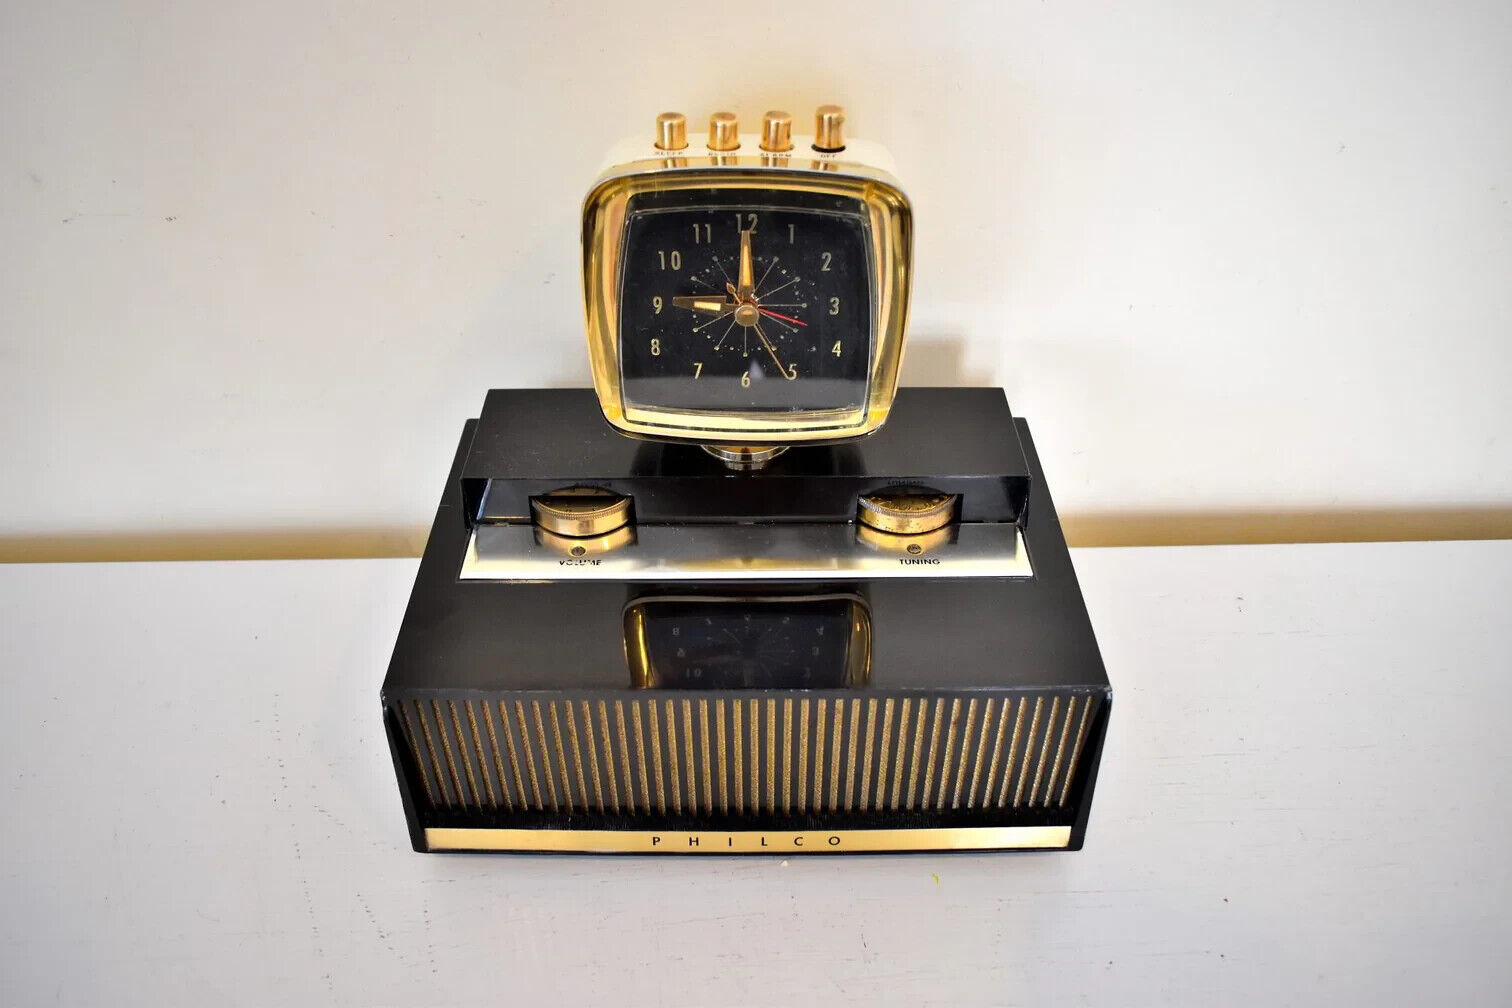 Philco 1958 Predicta Clock Radio - Model H765-124 - Vacuum Tube - Black & White